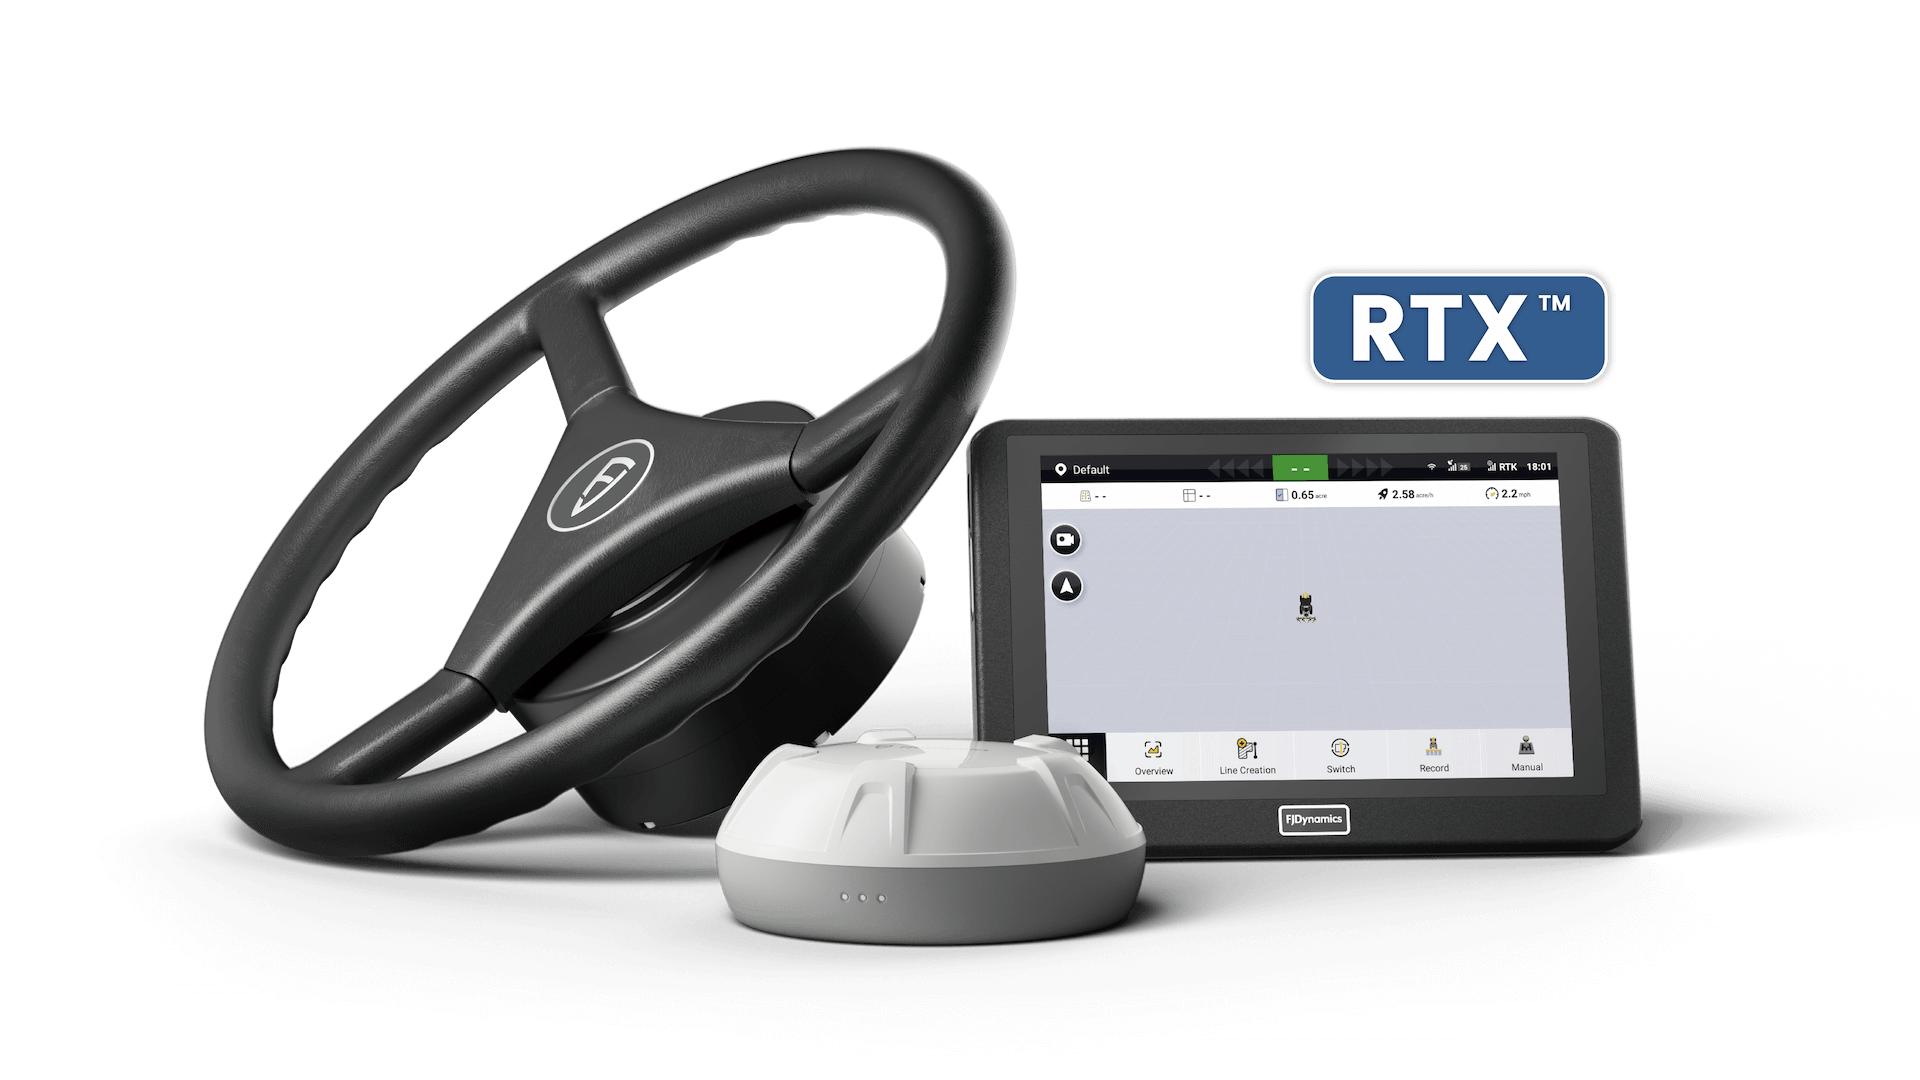 FJD AT2 PRO оснащена интегрированным оборудованием для коррекции RTX, обеспечивая точность позиционирования в сантиметрах через подписку на сервис.Оно доступно во всем мире без необходимости в установке базовой станции или подключения к интернету,что ограничивает рабочую зону.